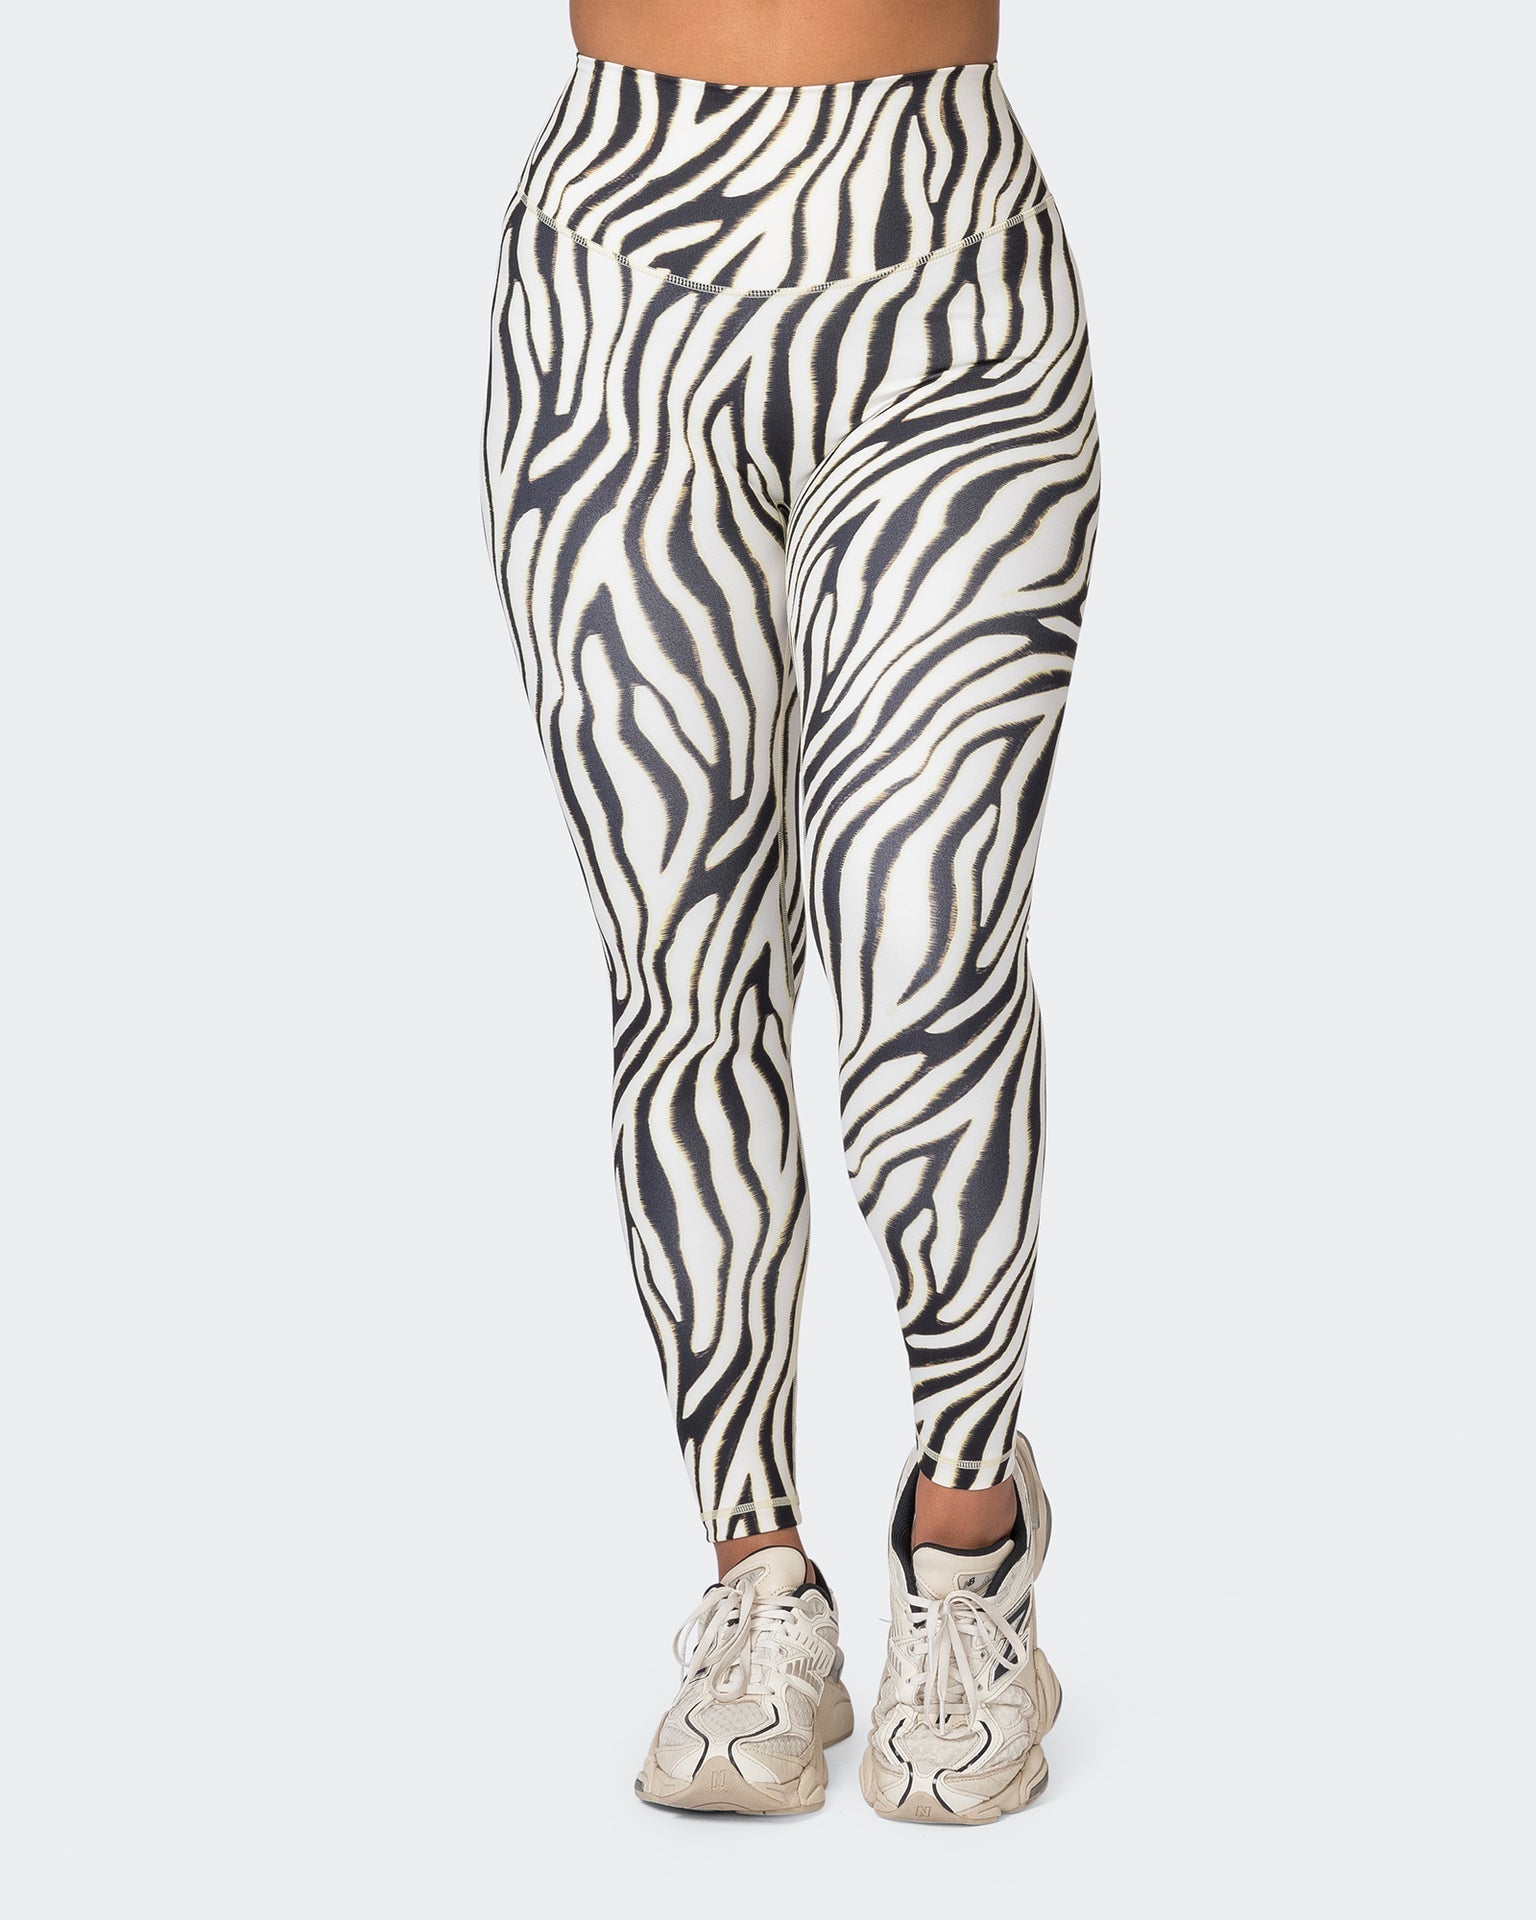 Muscle Nation Leggings Ultra Everyday Ankle Length Leggings - Zebra Print